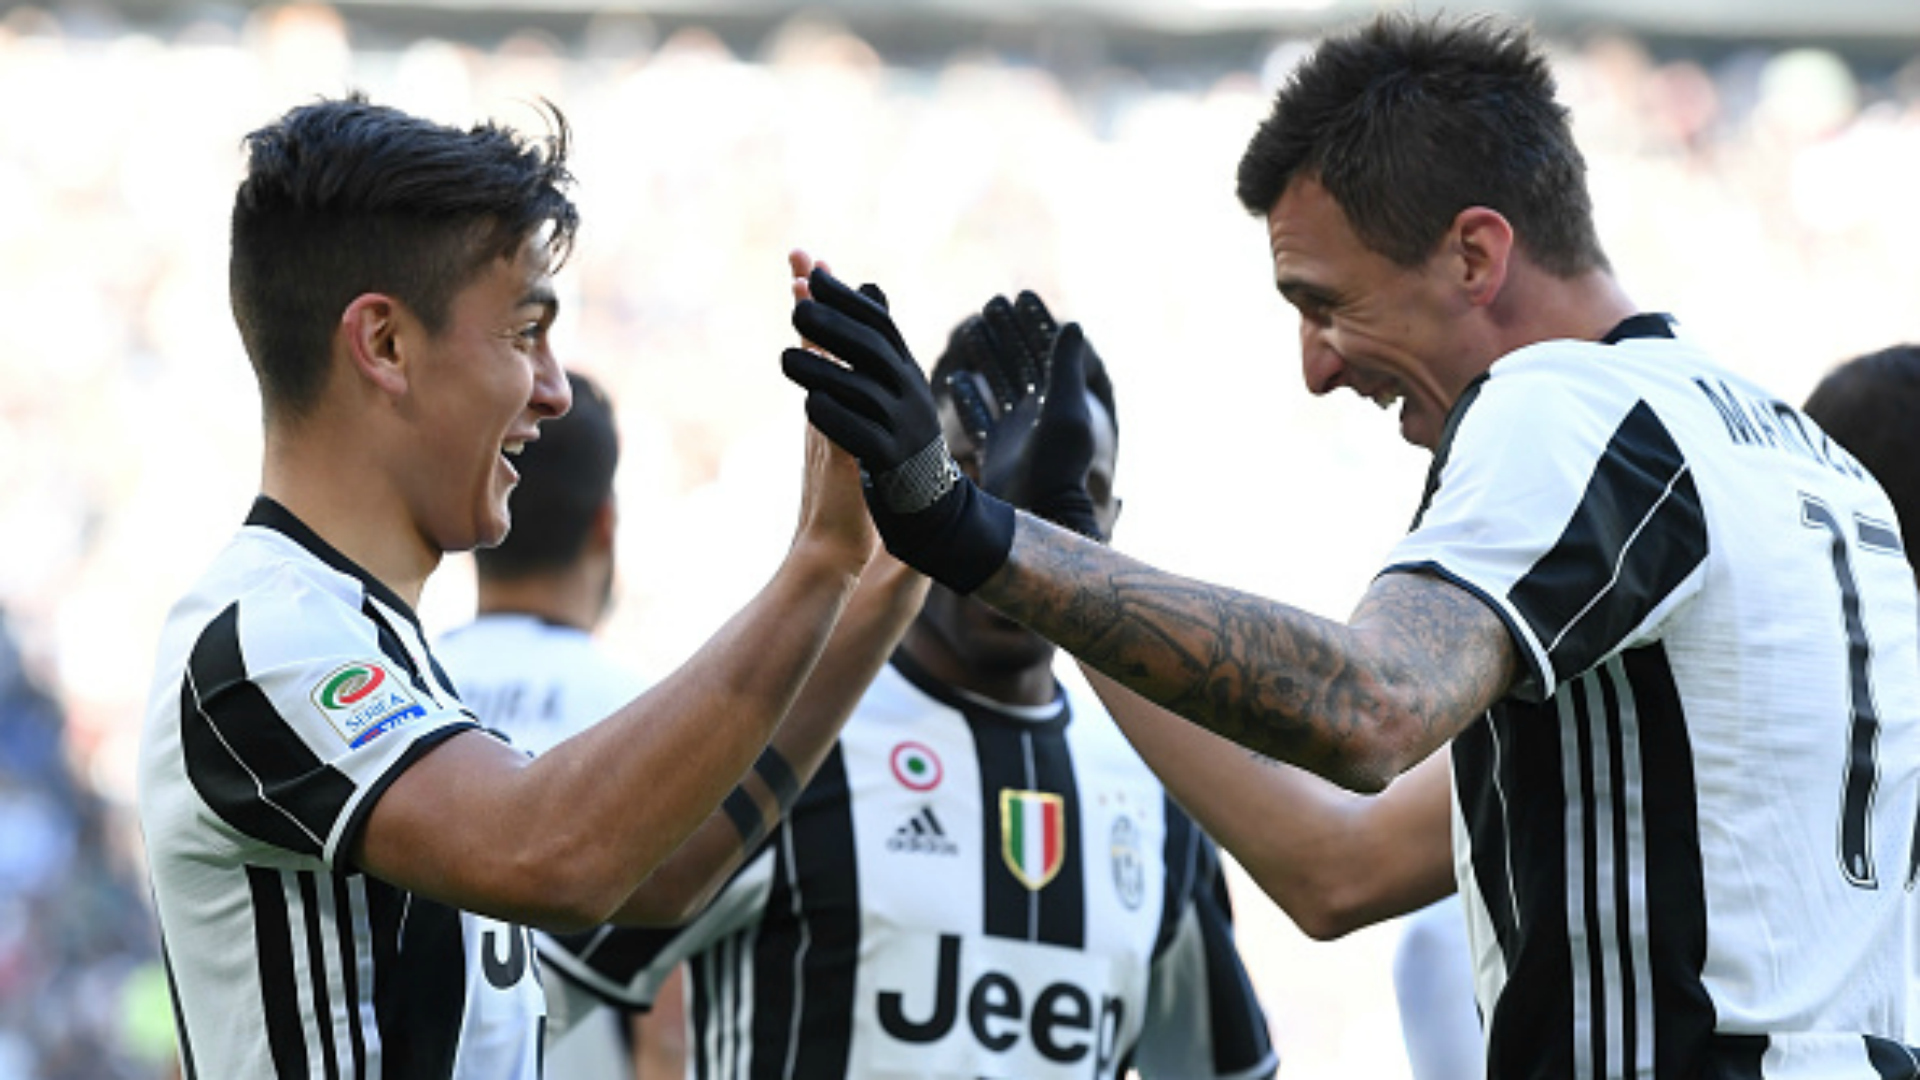 Juventus V Lazio Match Report 22 01 2017 Serie A Goalcom